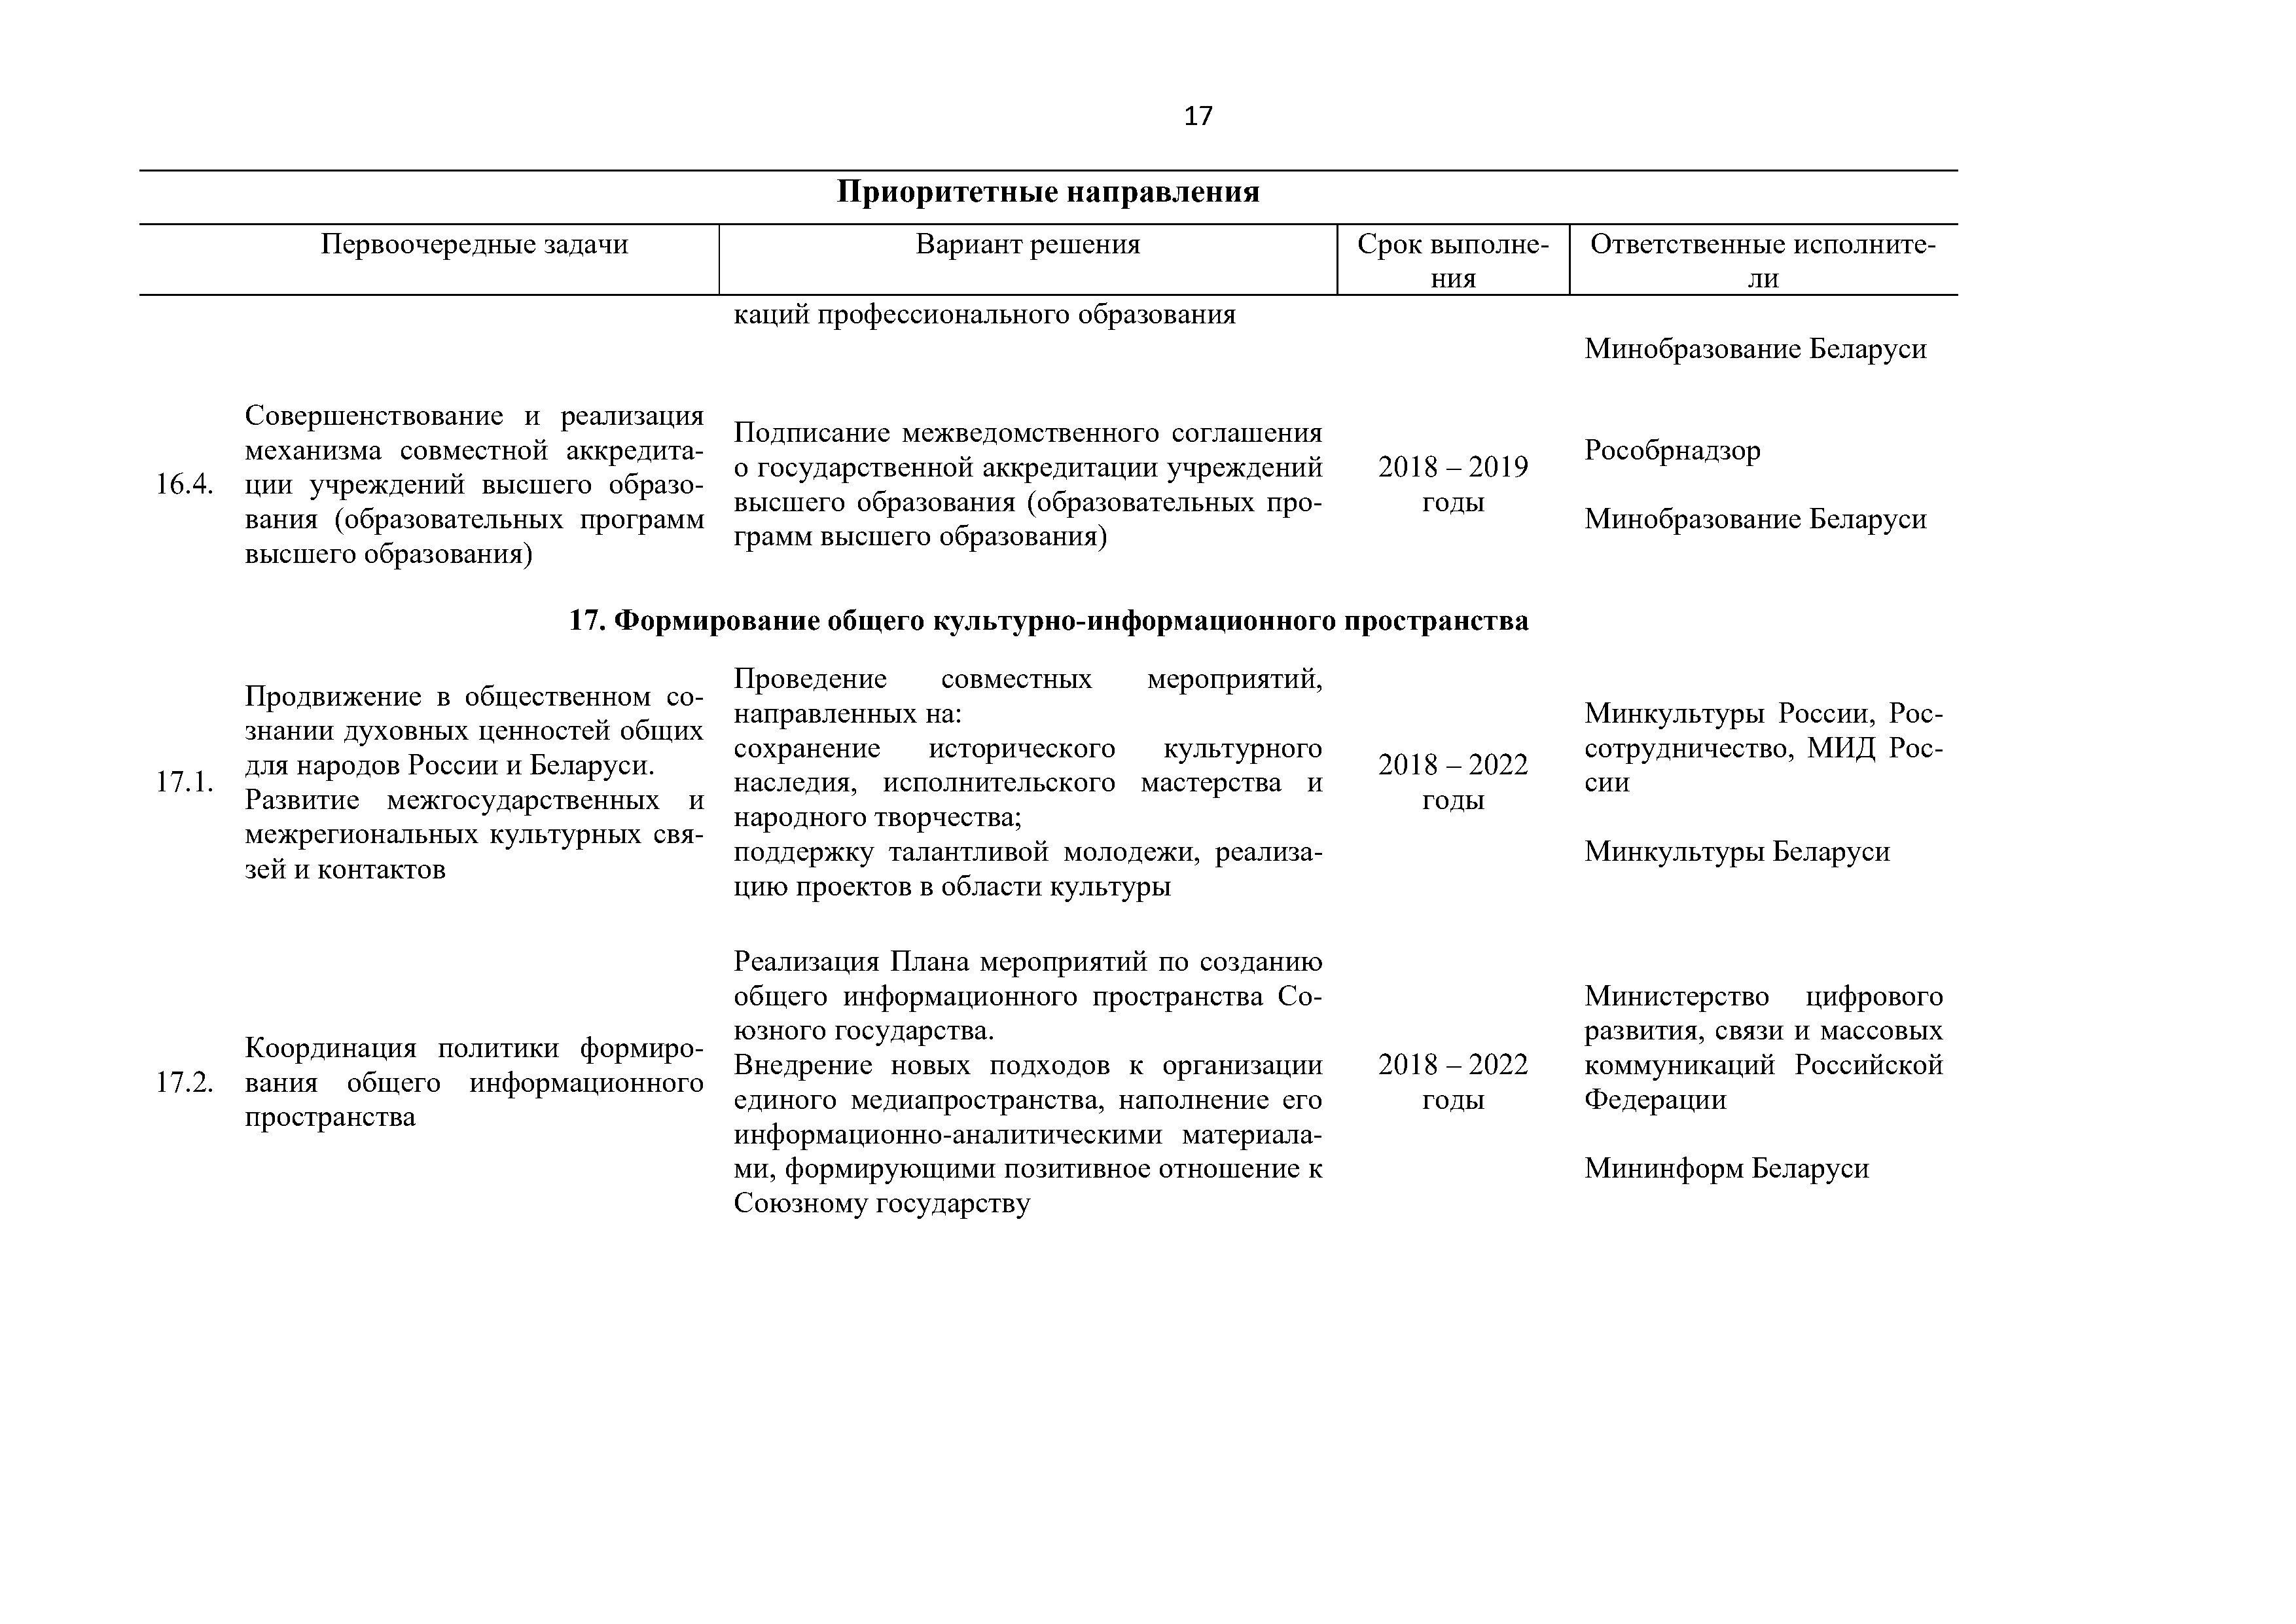 Приоритетные направления и первоочередные задачи развития Союзного государства на 2018 – 2022 г. (Страница 17)